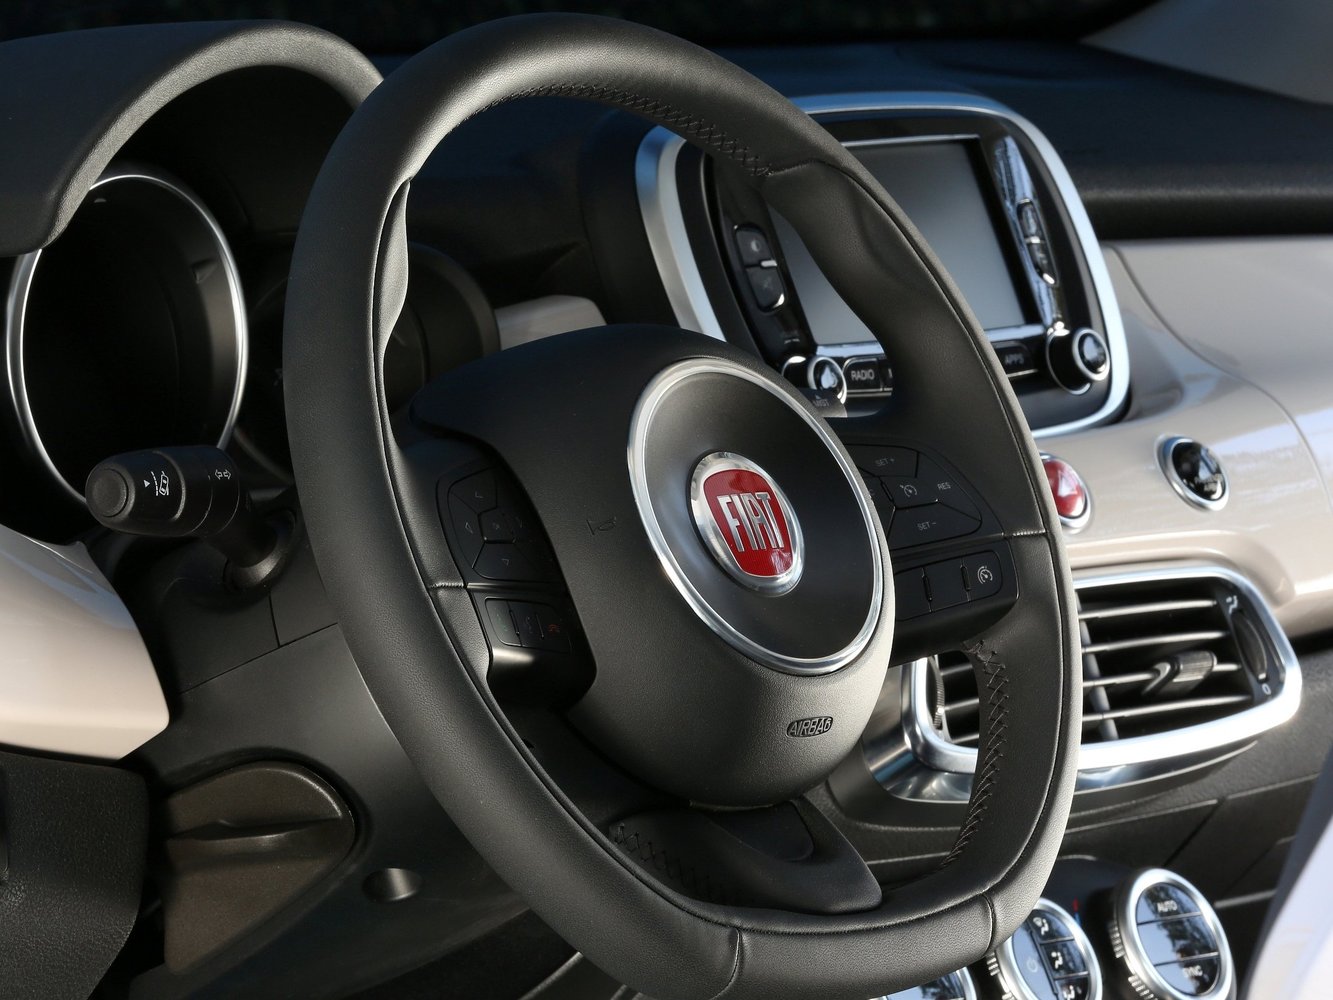 кроссовер Fiat 500X 2014 - 2016г выпуска модификация 2.4 AT (180 л.с.)